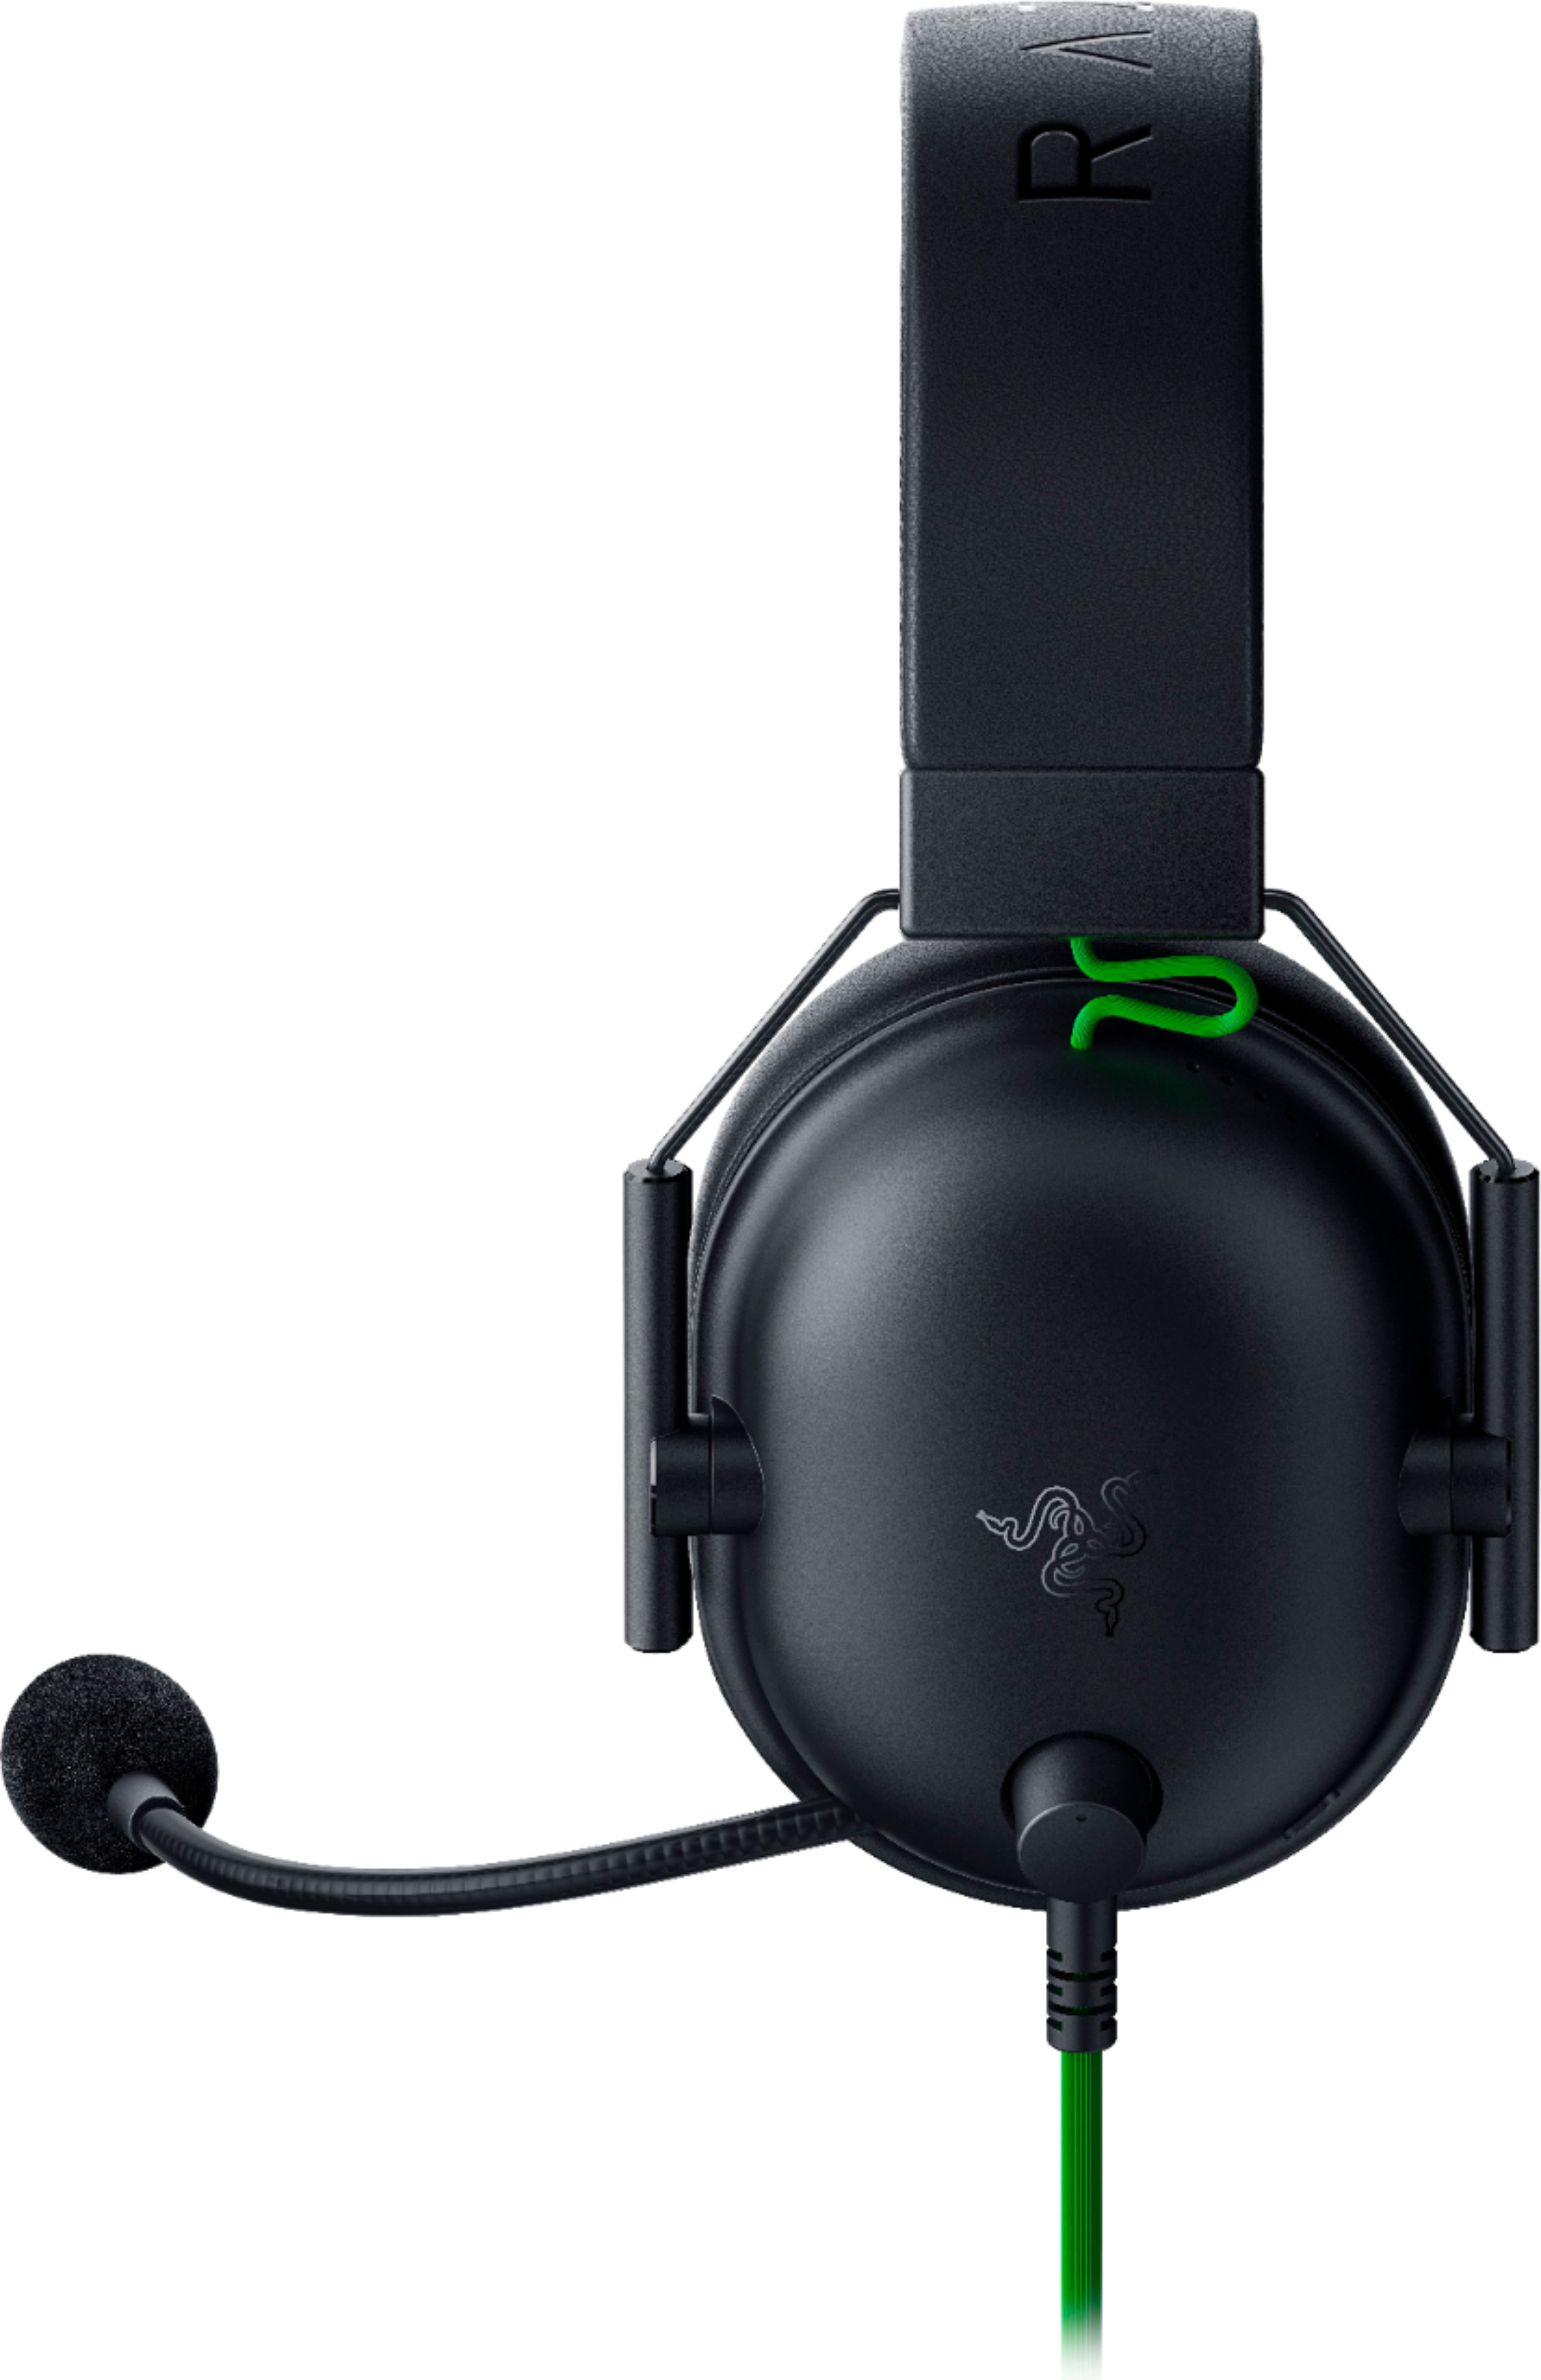 Herný headset Razer Blackshark V2 X, čierny